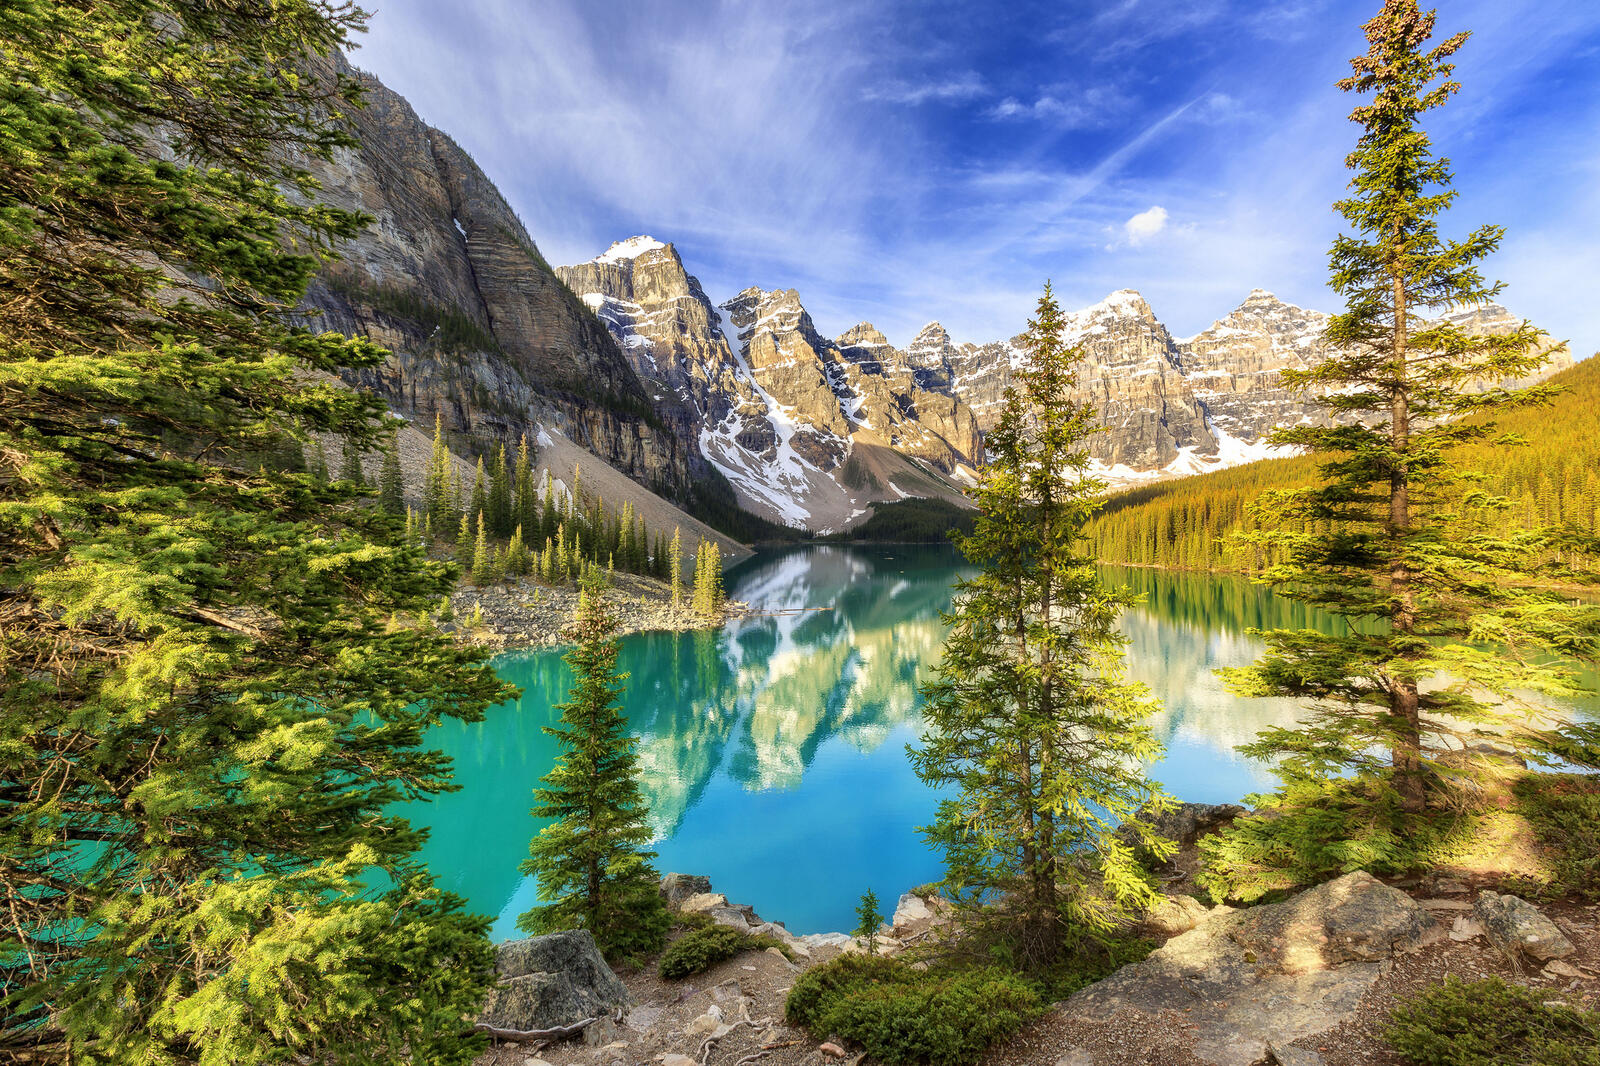 Wallpapers moraine lake banff national park landscapes on the desktop